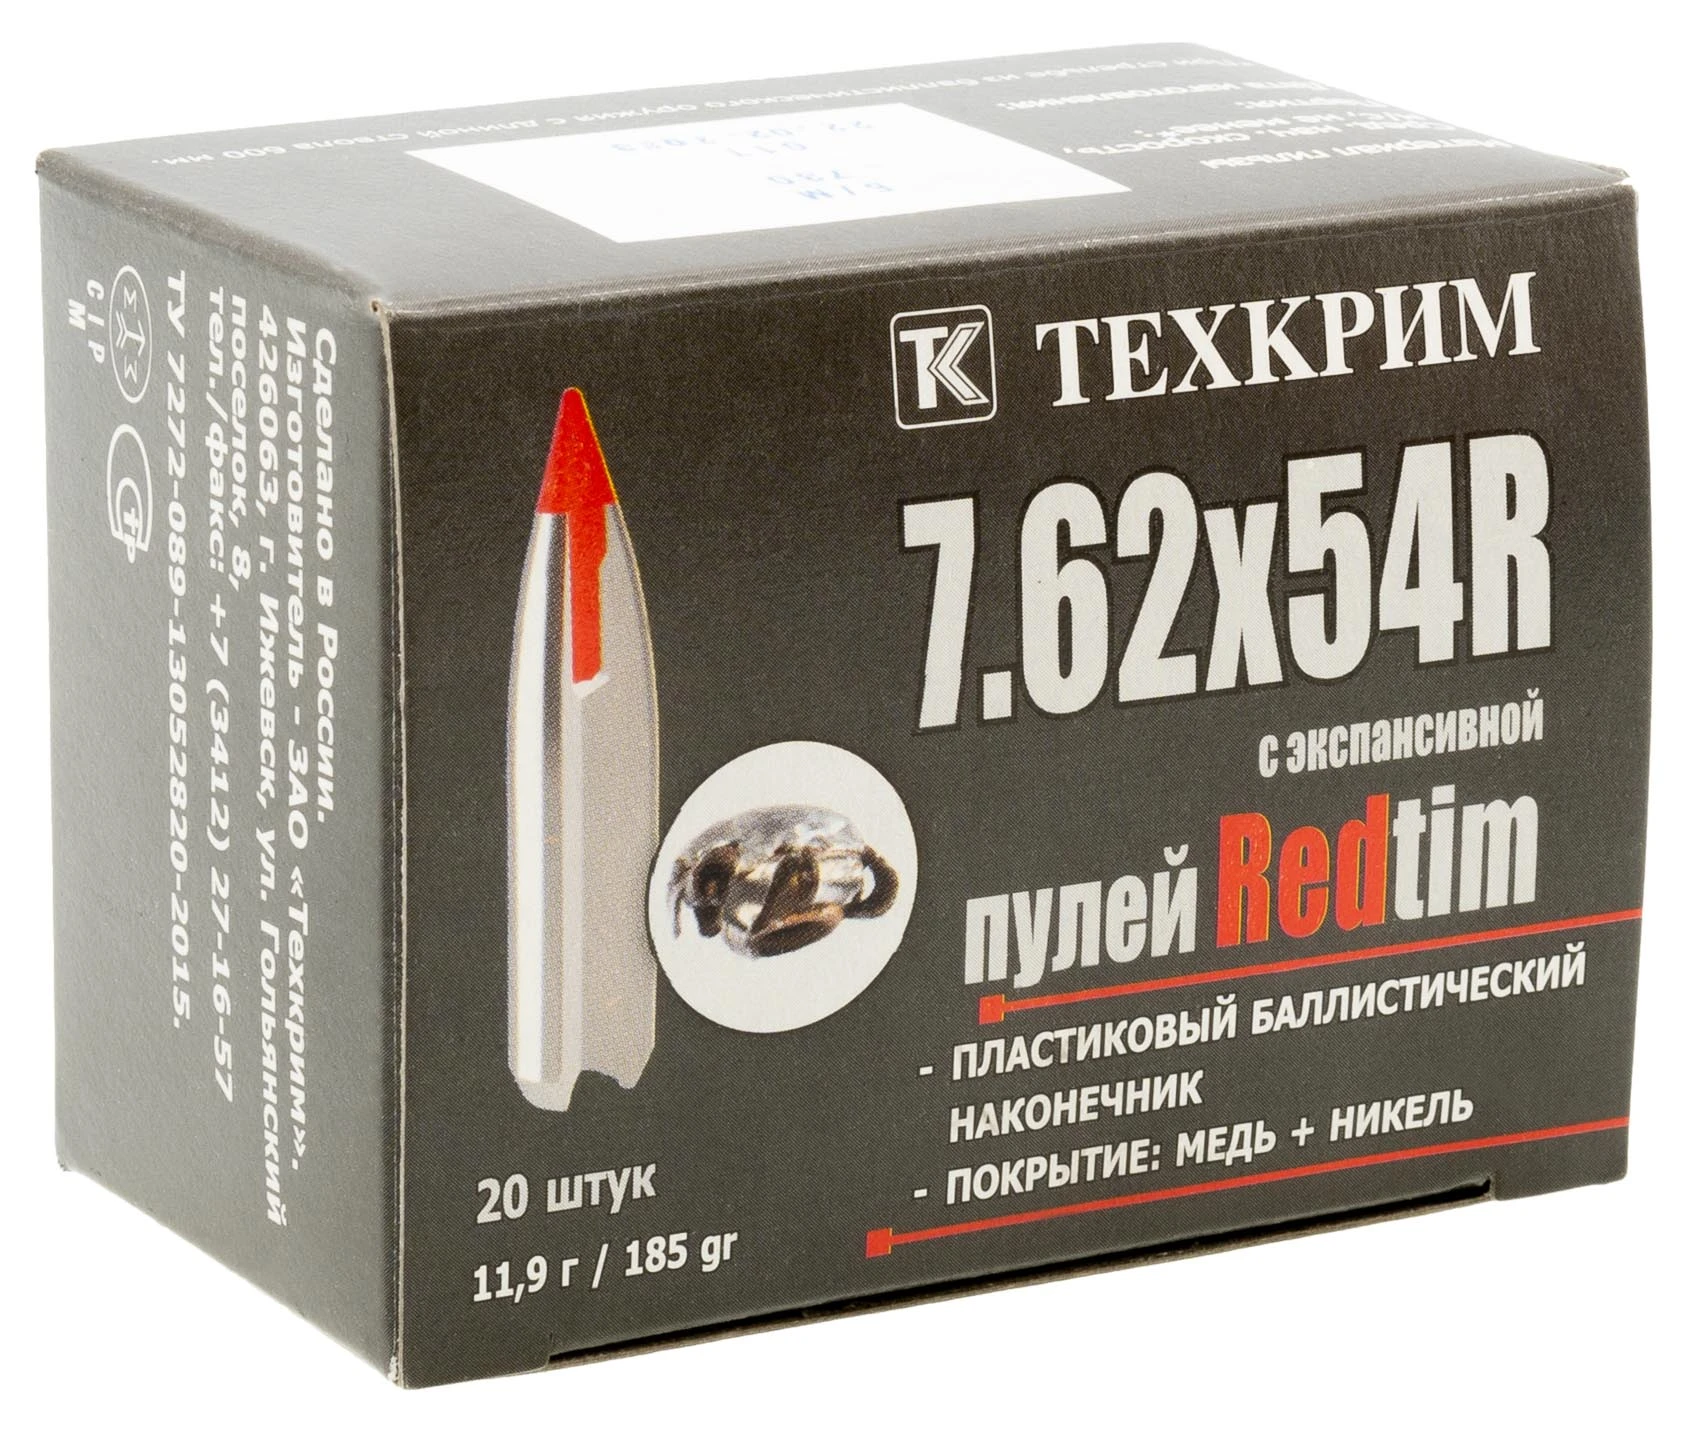 Патрон 7,62 х54 (пуля REDTIM (Техкрим) (20))